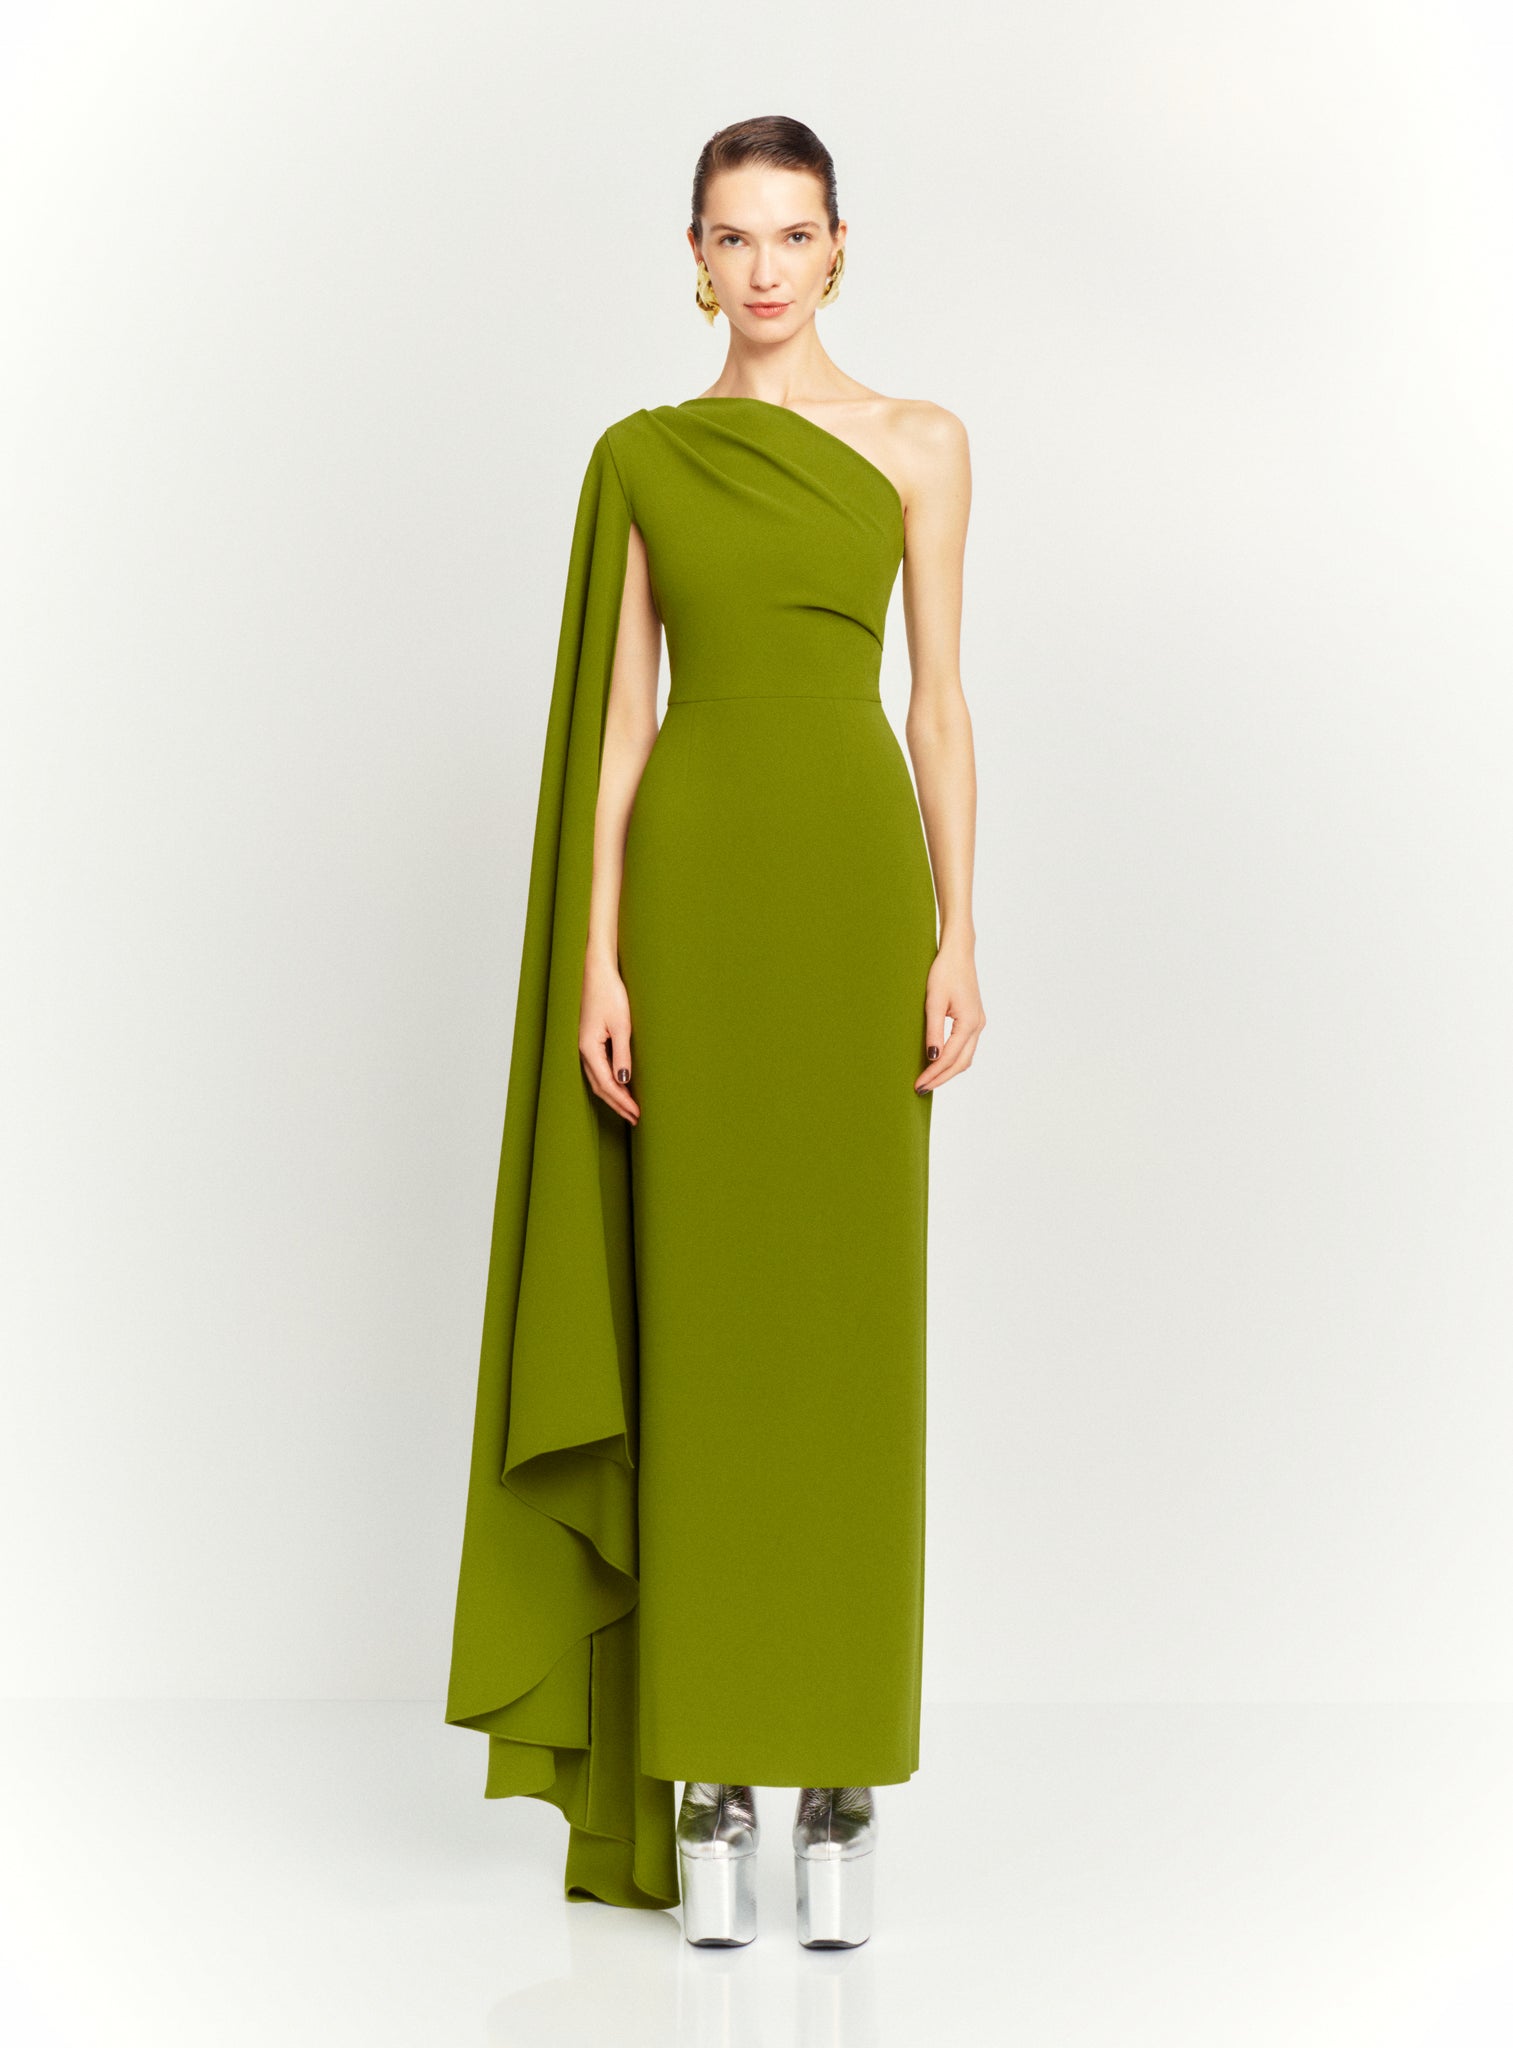 The Daria Maxi Dress in Sweet Pea Green